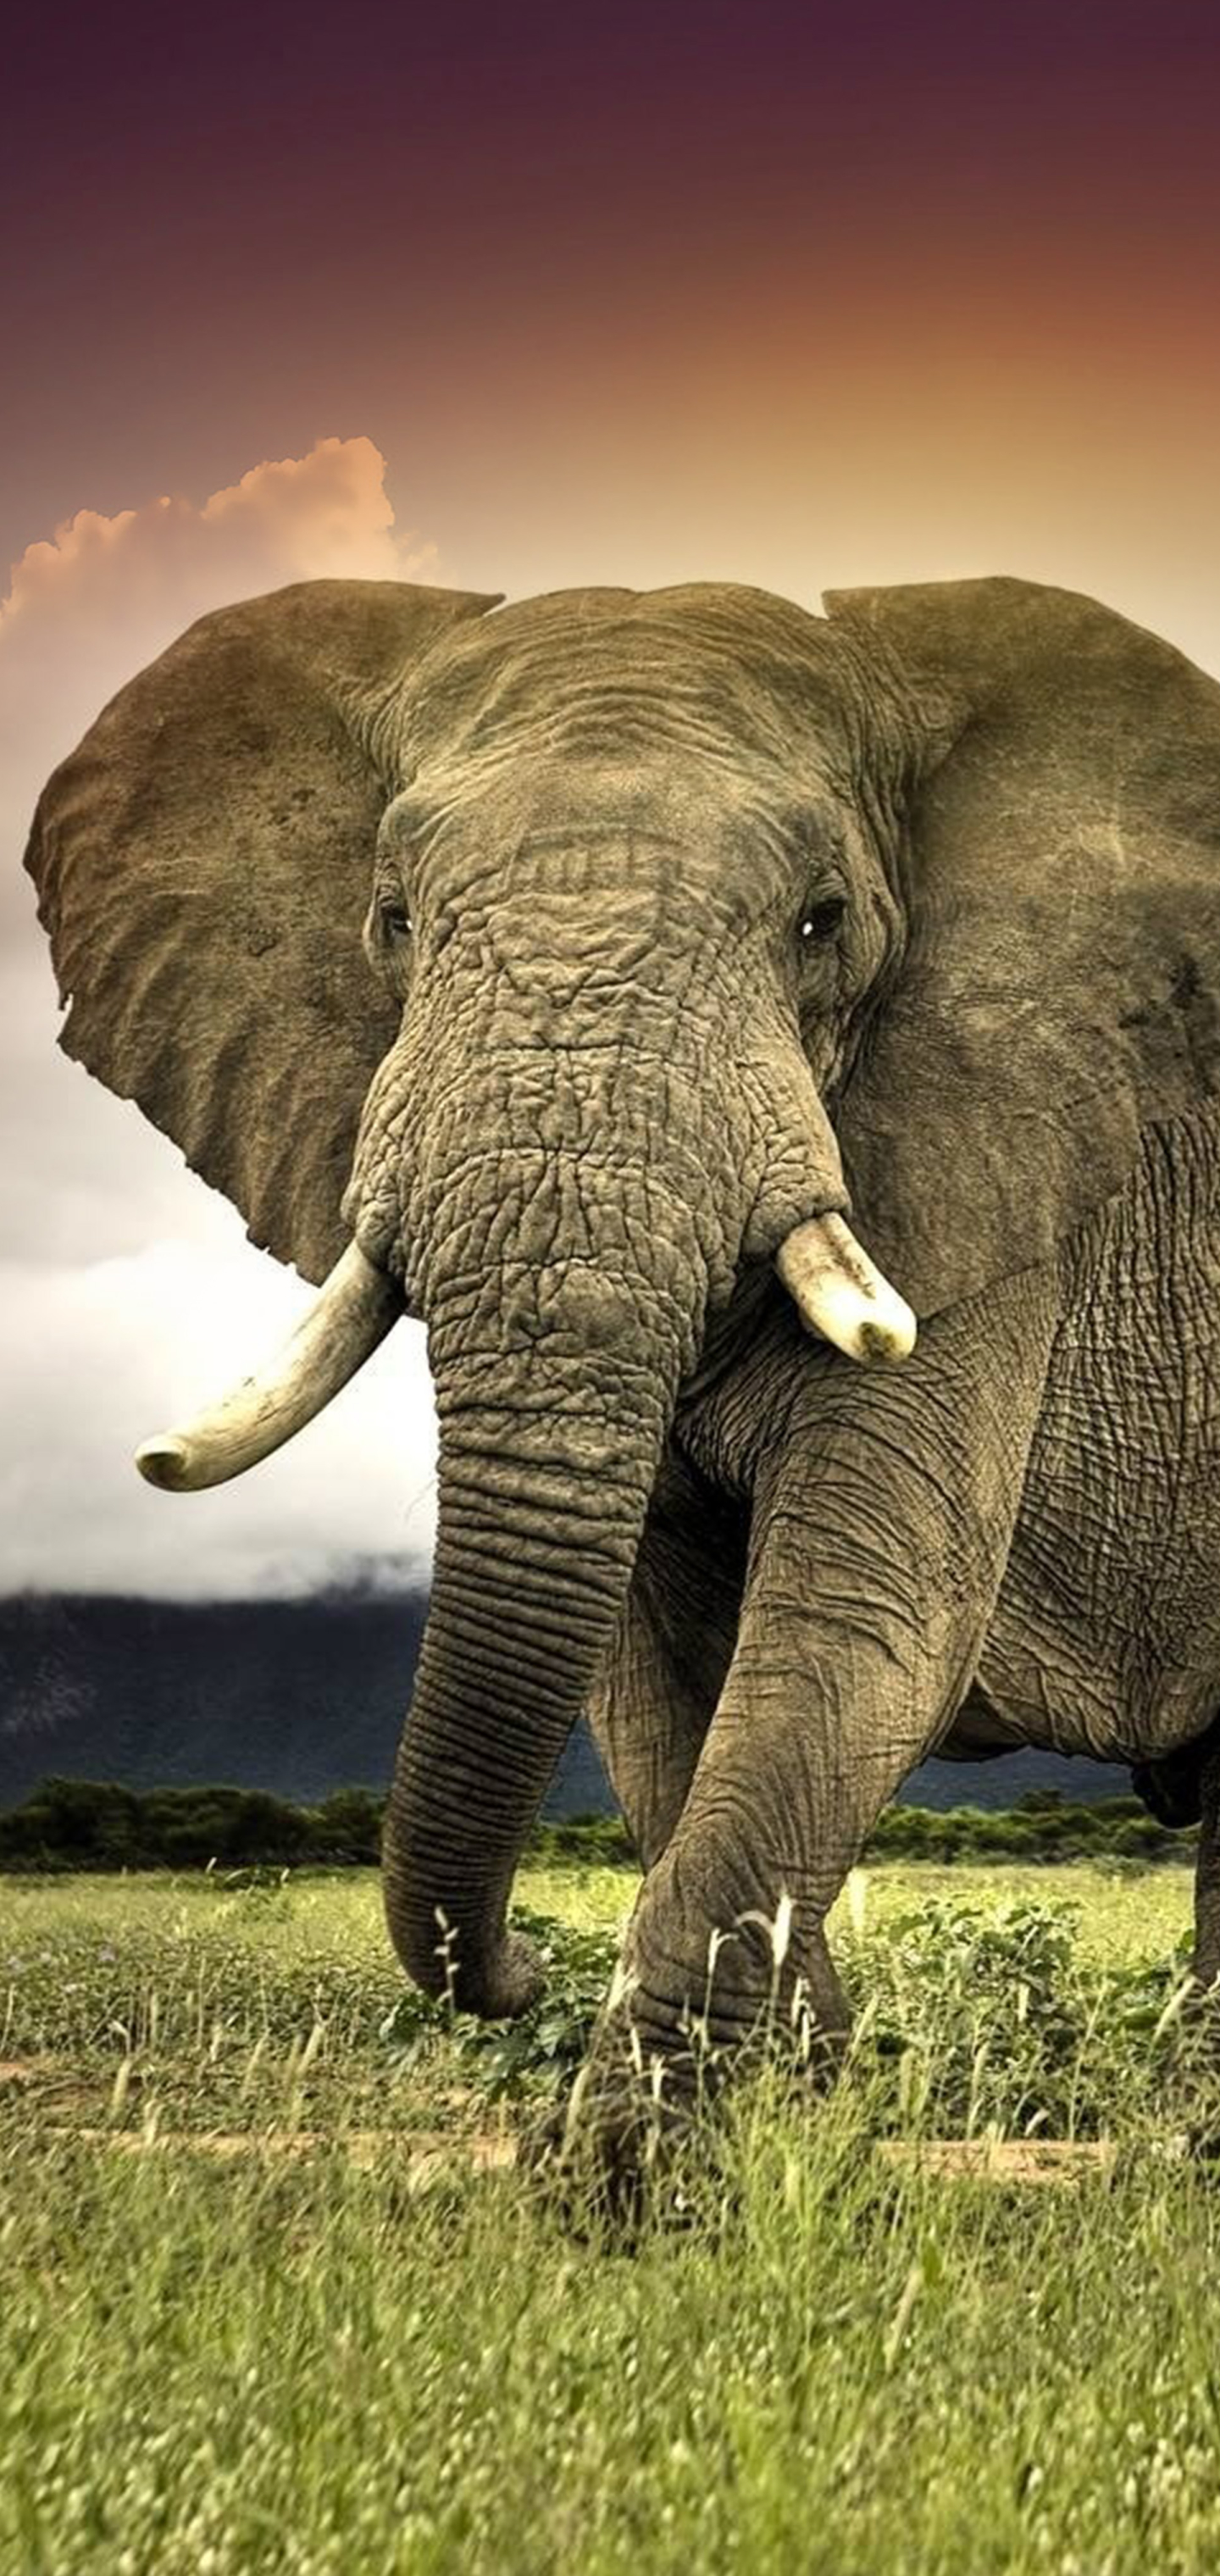 Скачать обои бесплатно Животные, Саванна, Слоны, Слон, Африка, Африканский Слон картинка на рабочий стол ПК